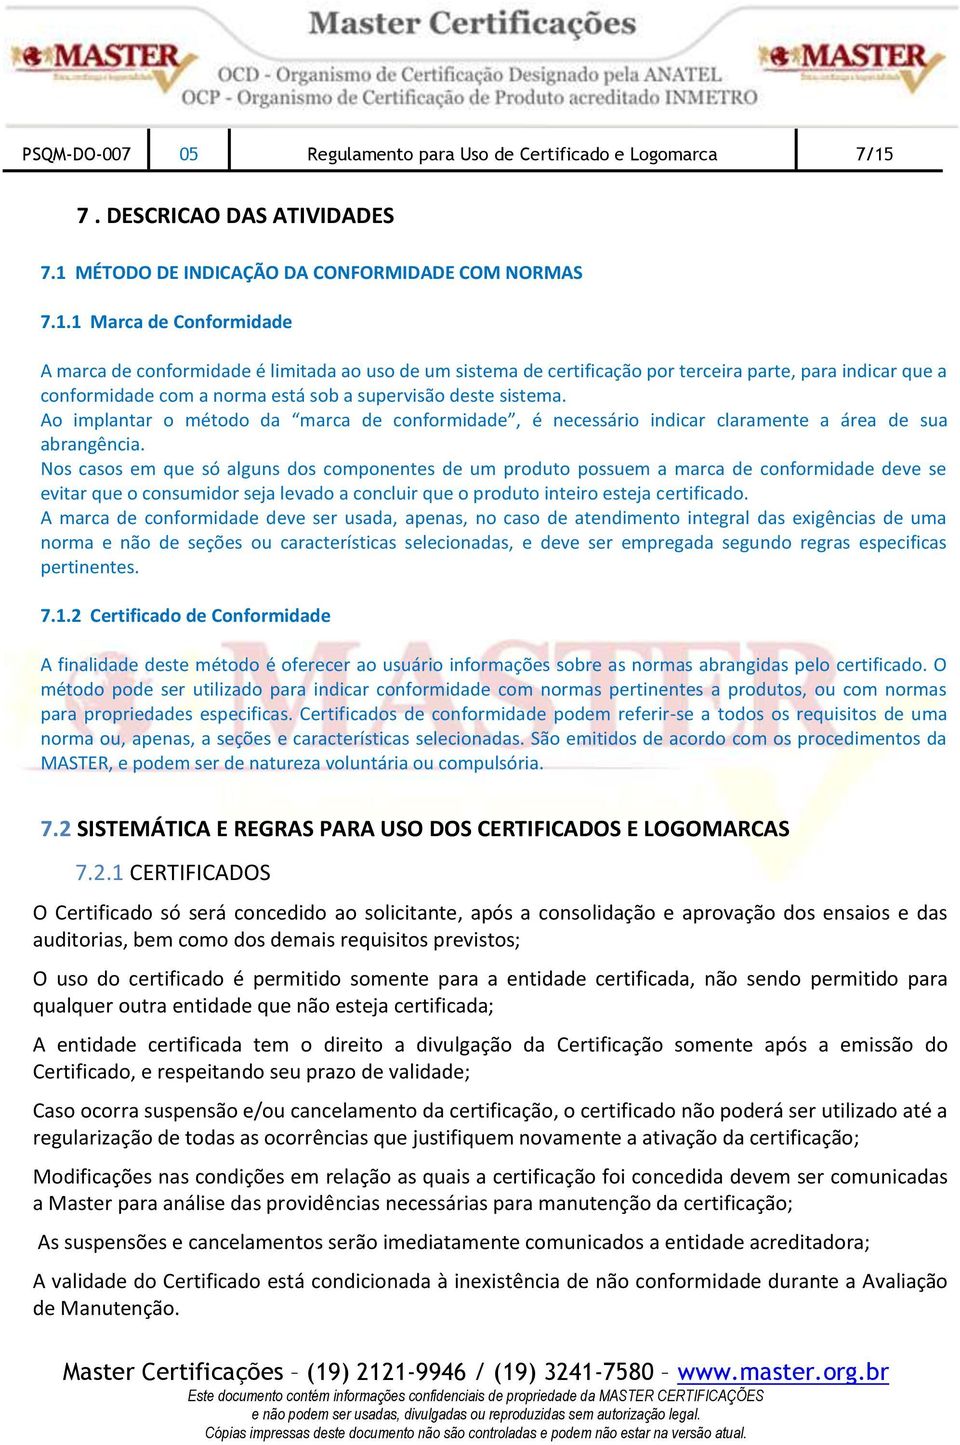 MÉTODO DE INDICAÇÃO DA CONFORMIDADE COM NORMAS 7.1.